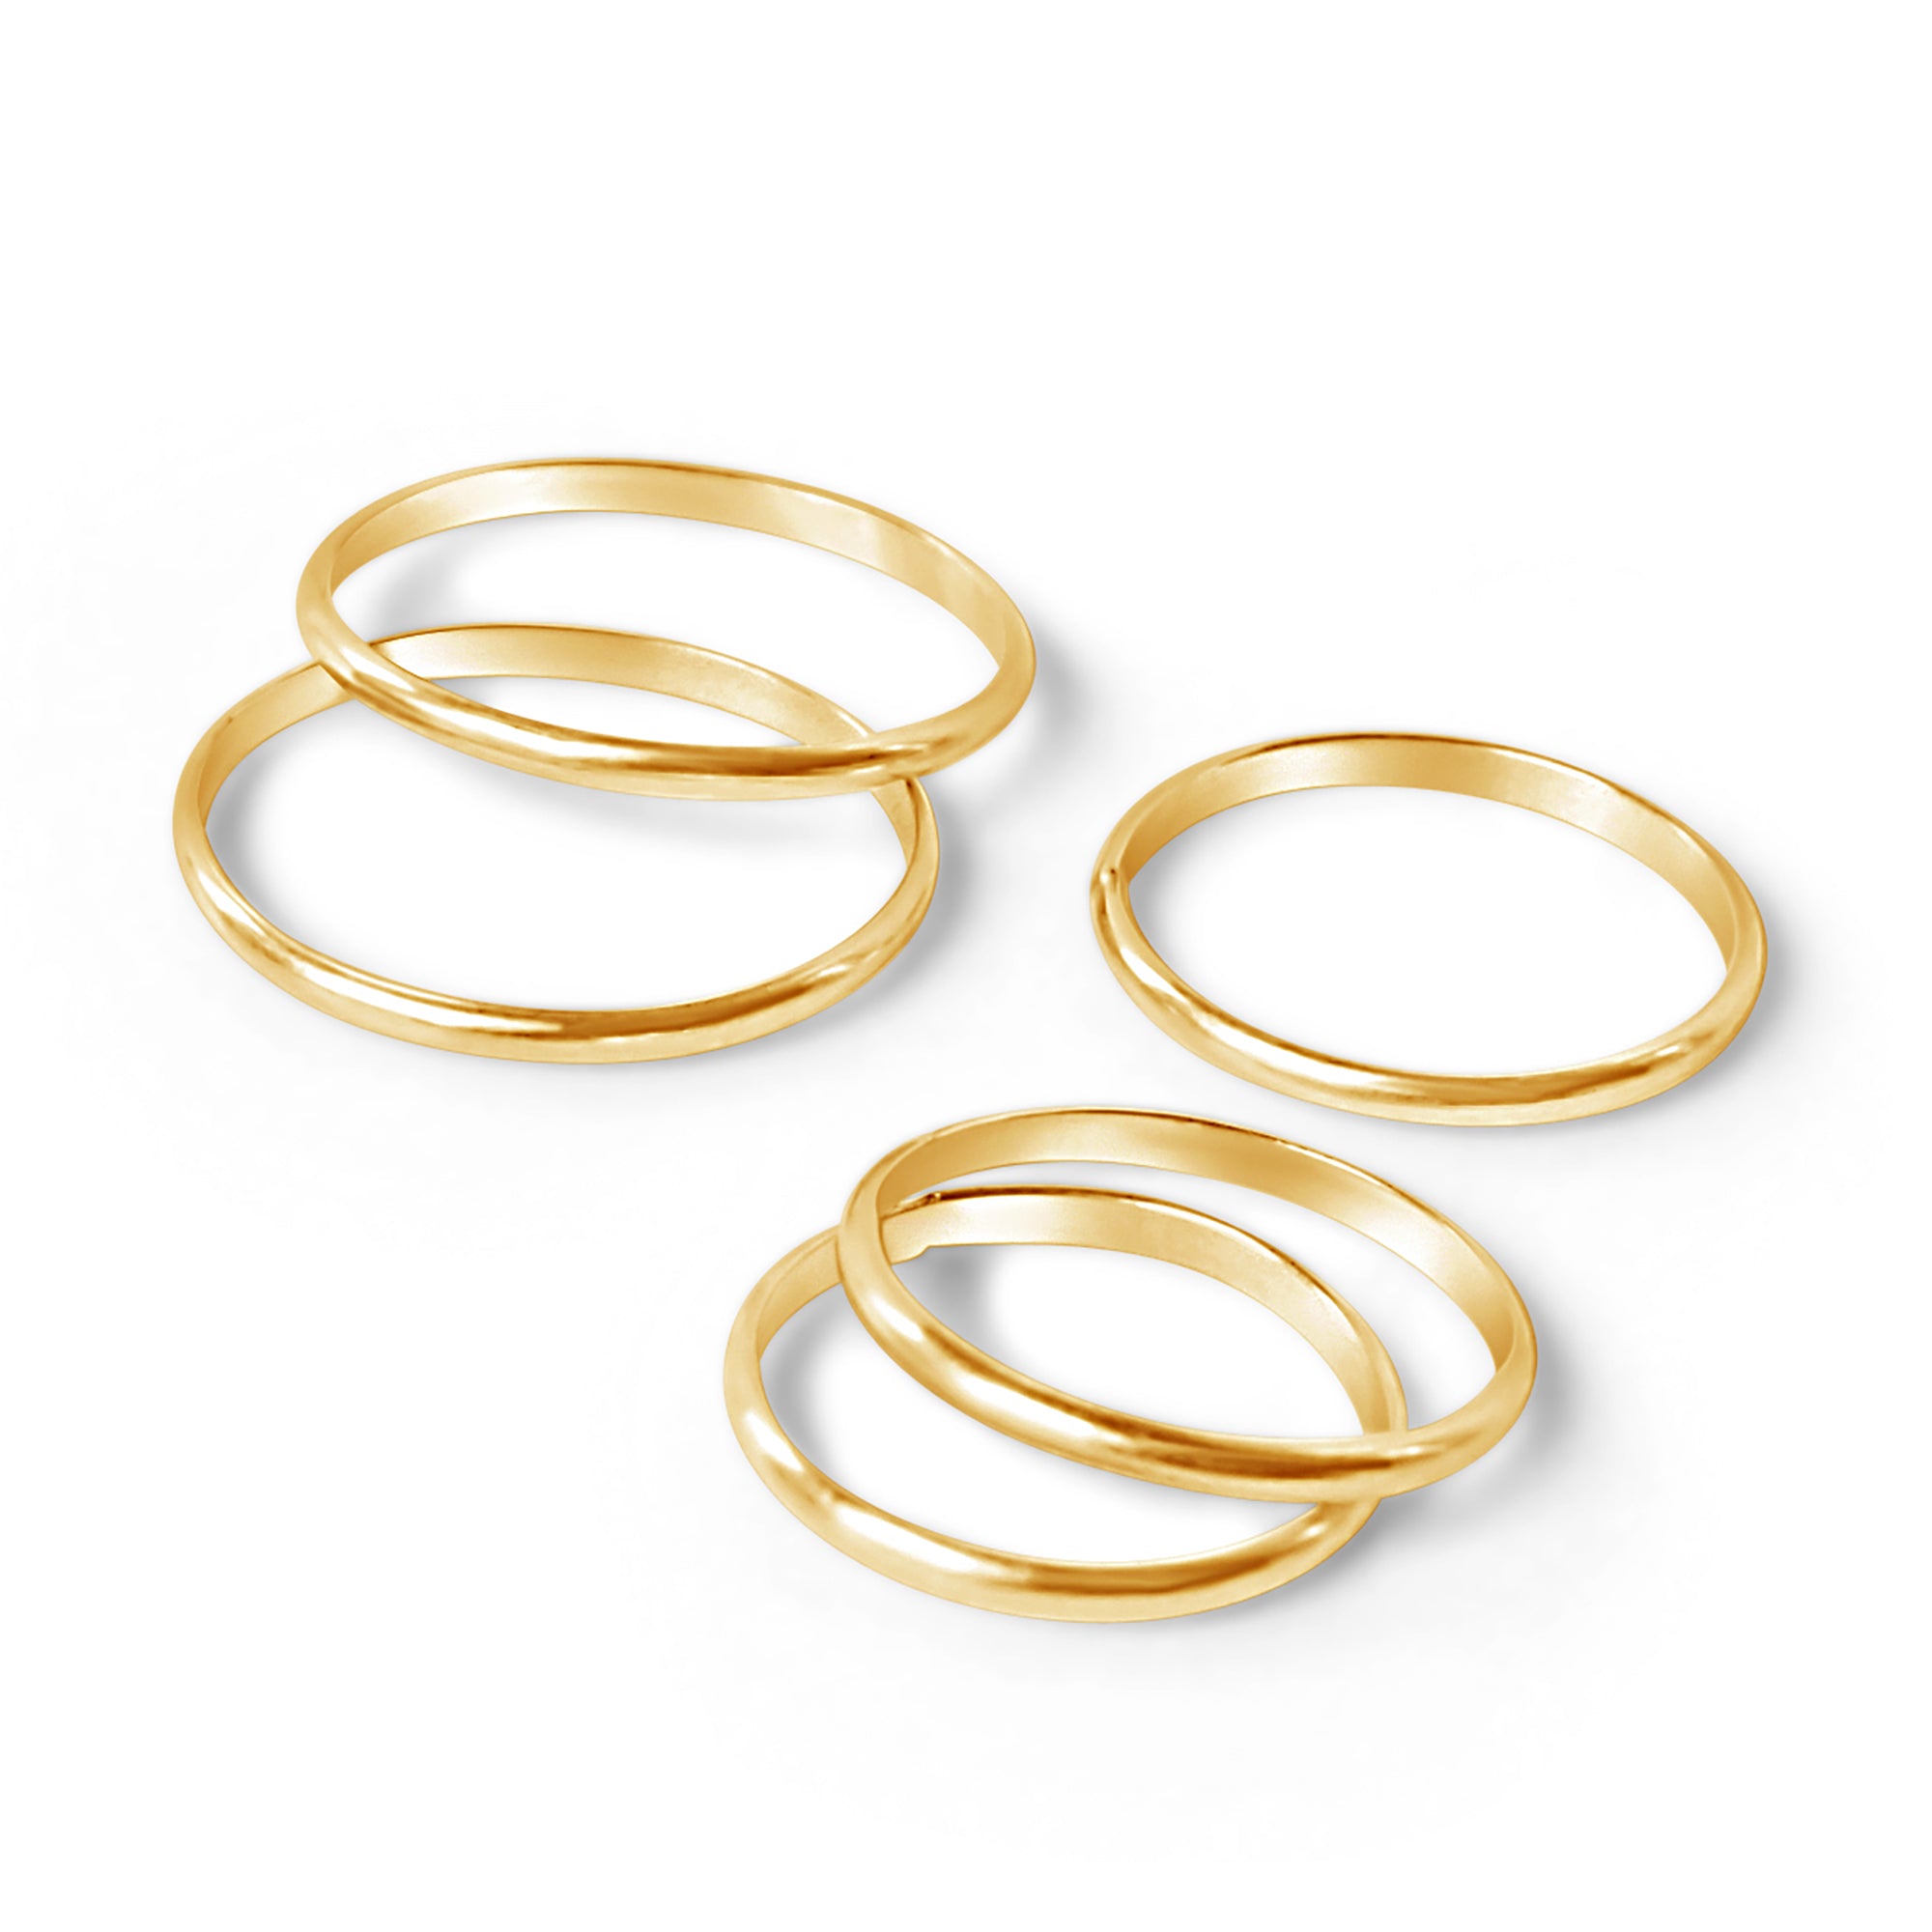 5 Golden Rings Gift Set